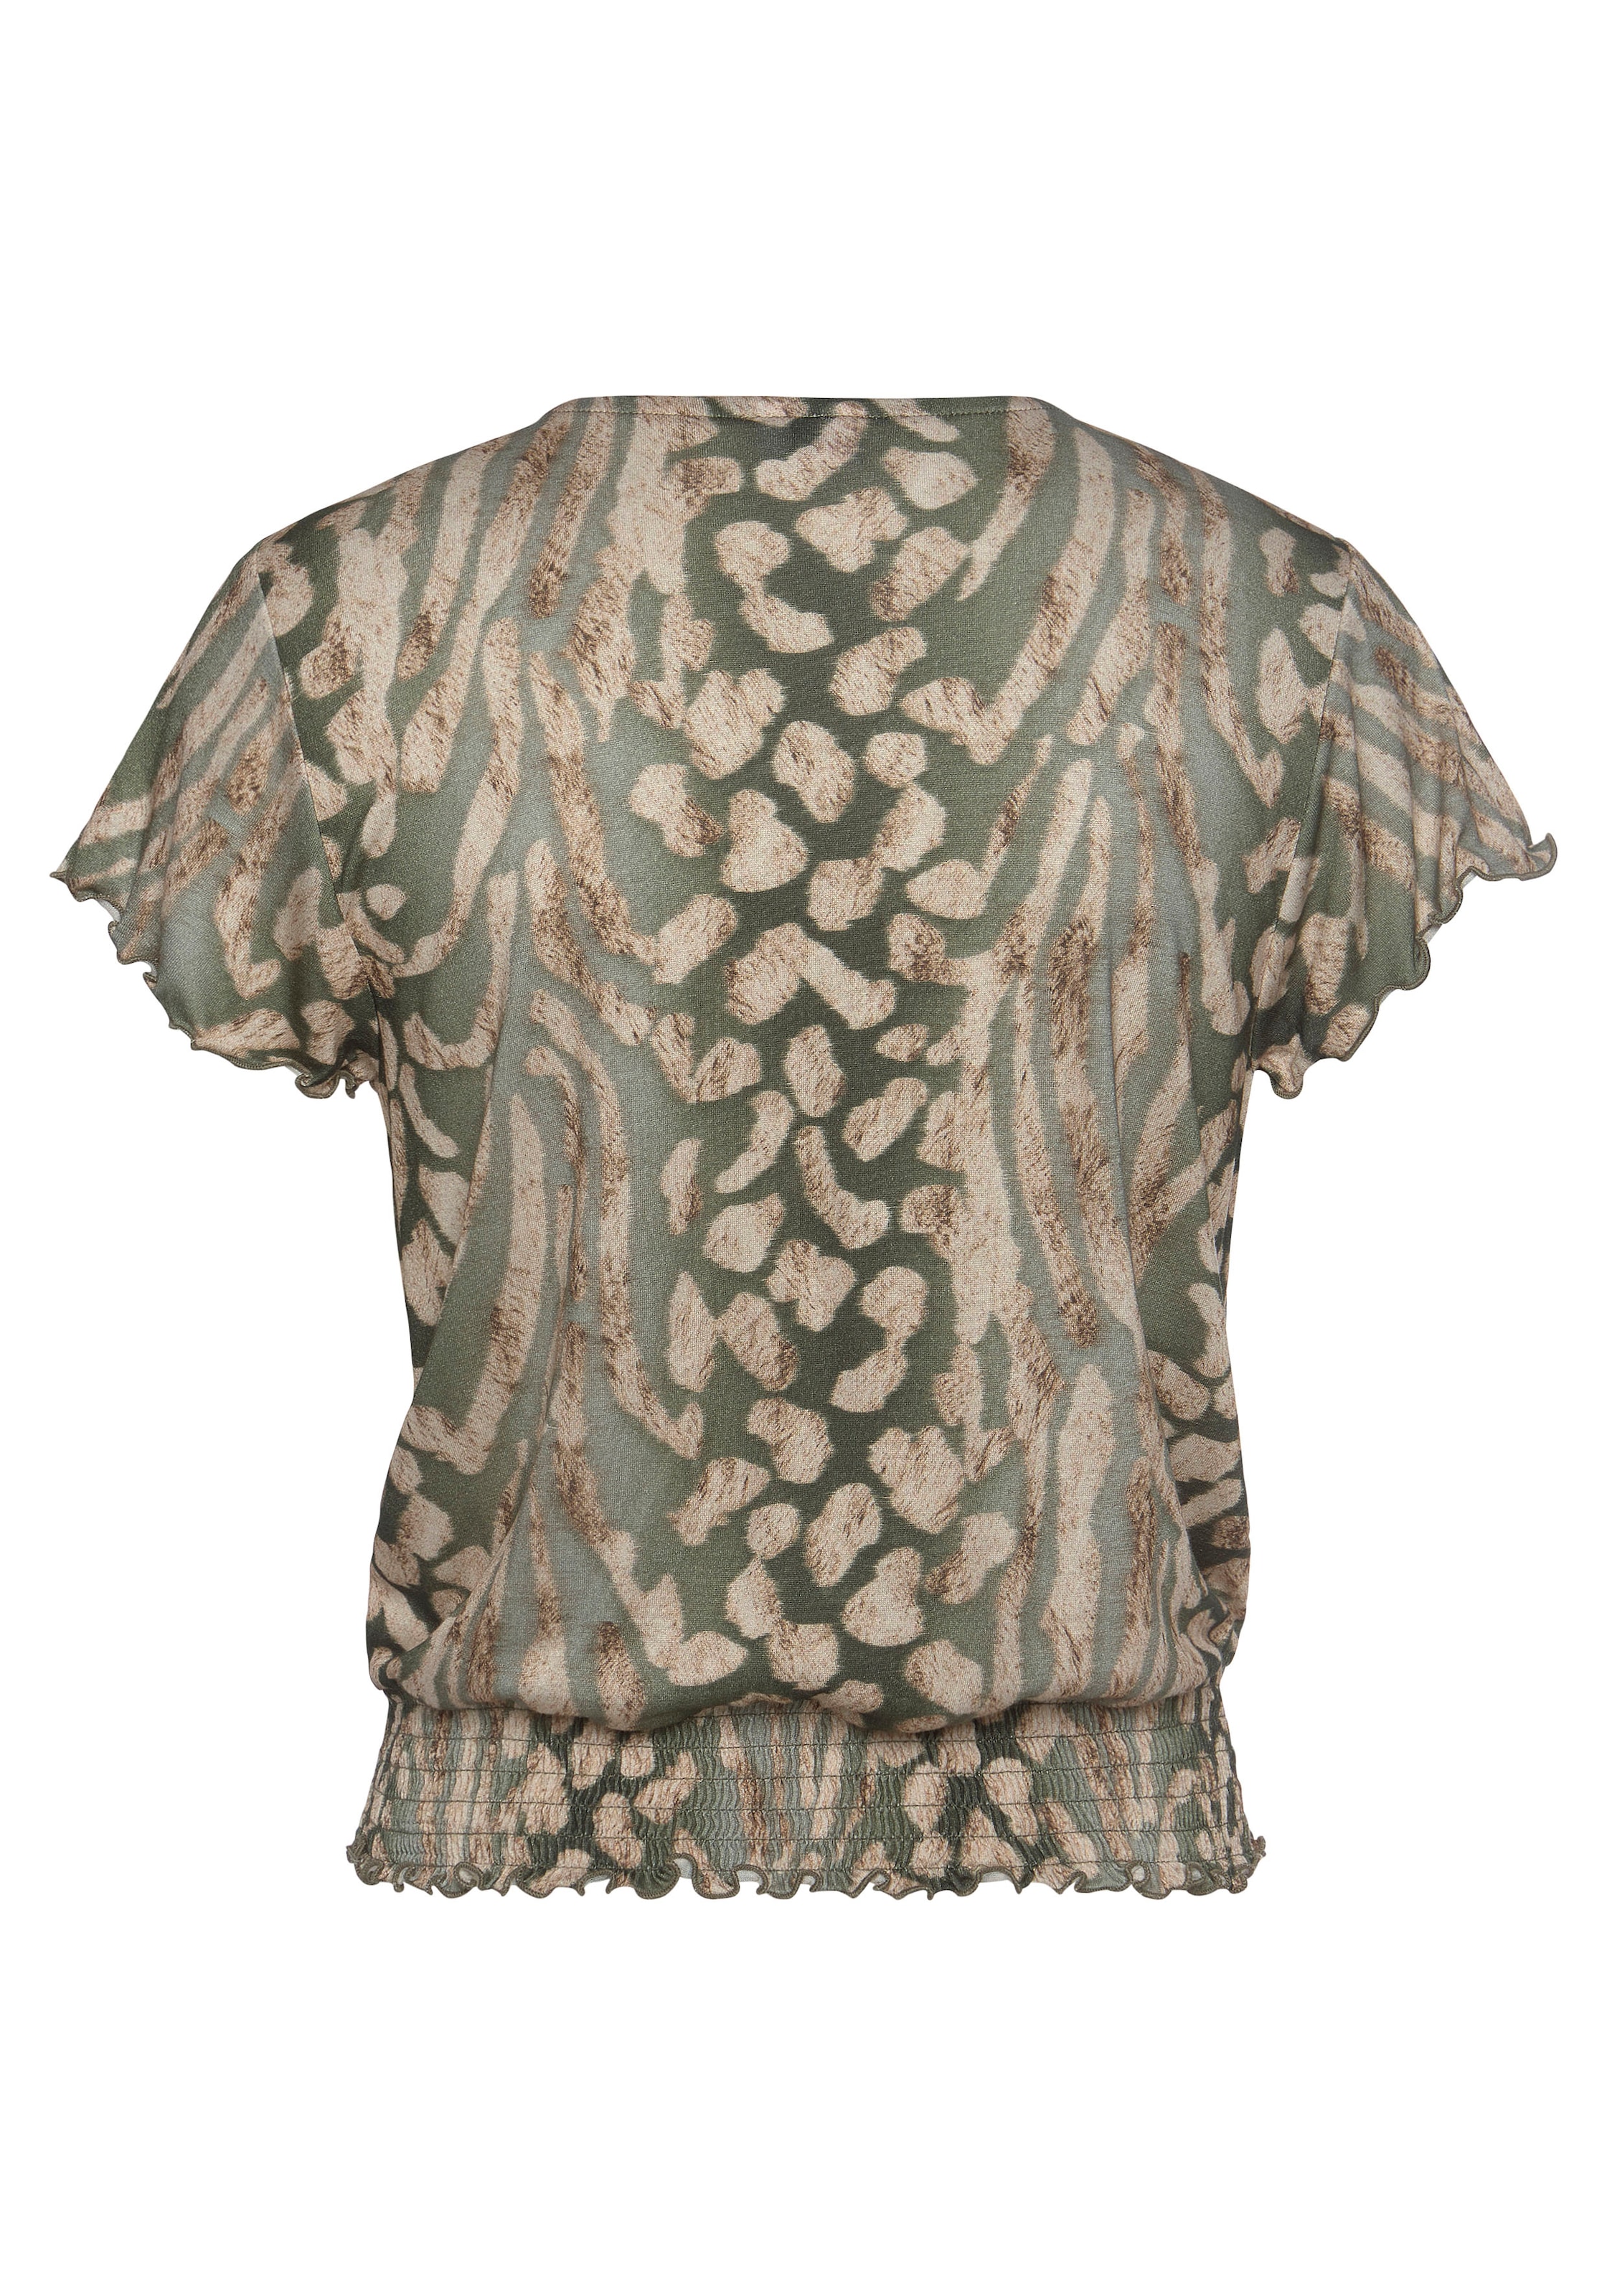 LASCANA Kurzarmshirt, mit Animalprint, Blusenshirt mit V-Auschnitt, casual-chic  bestellen bei OTTO